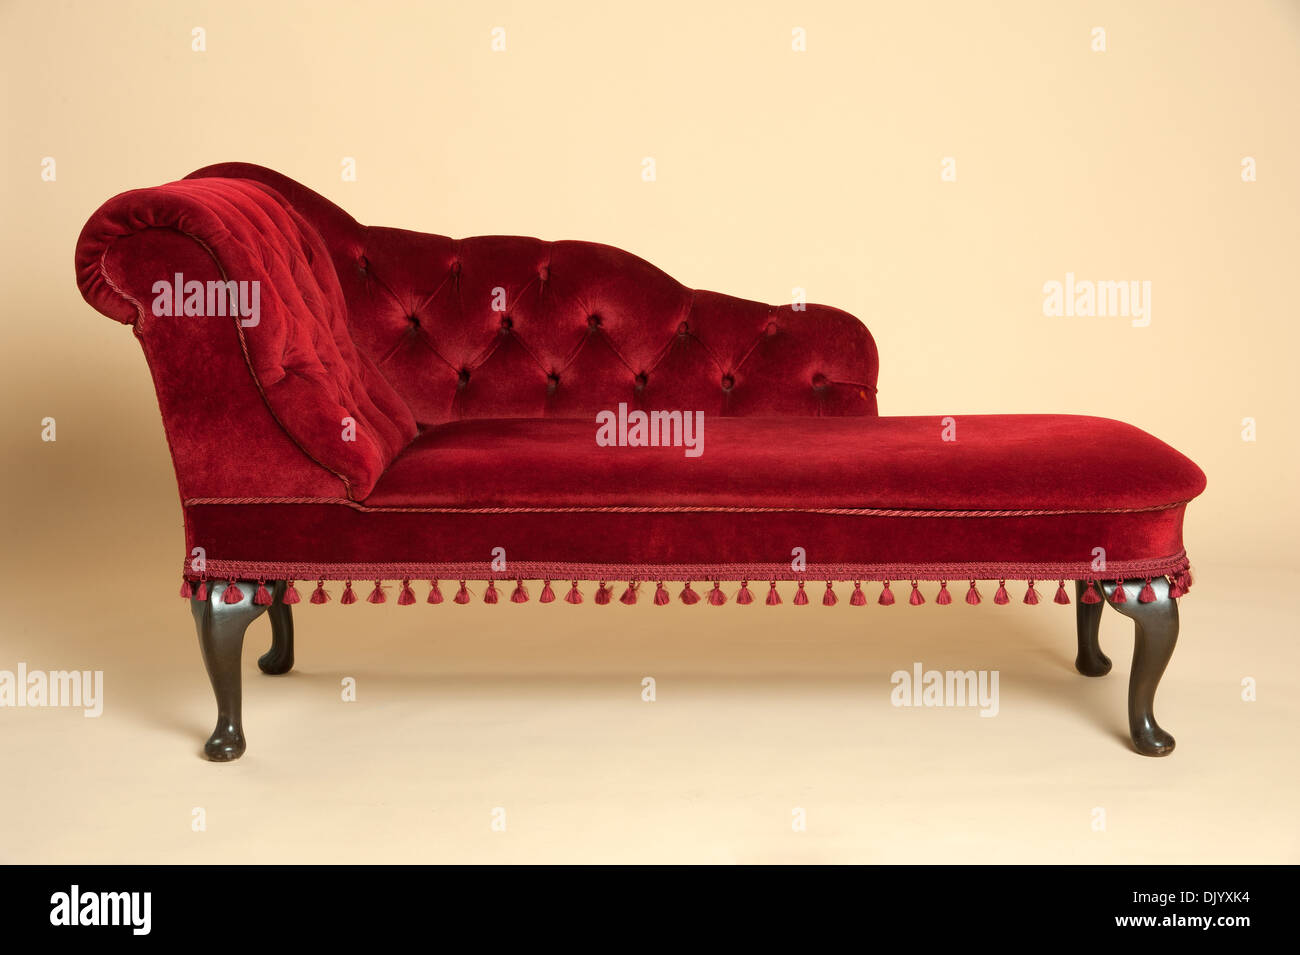 Longue chaise immagini e fotografie stock ad alta risoluzione - Alamy